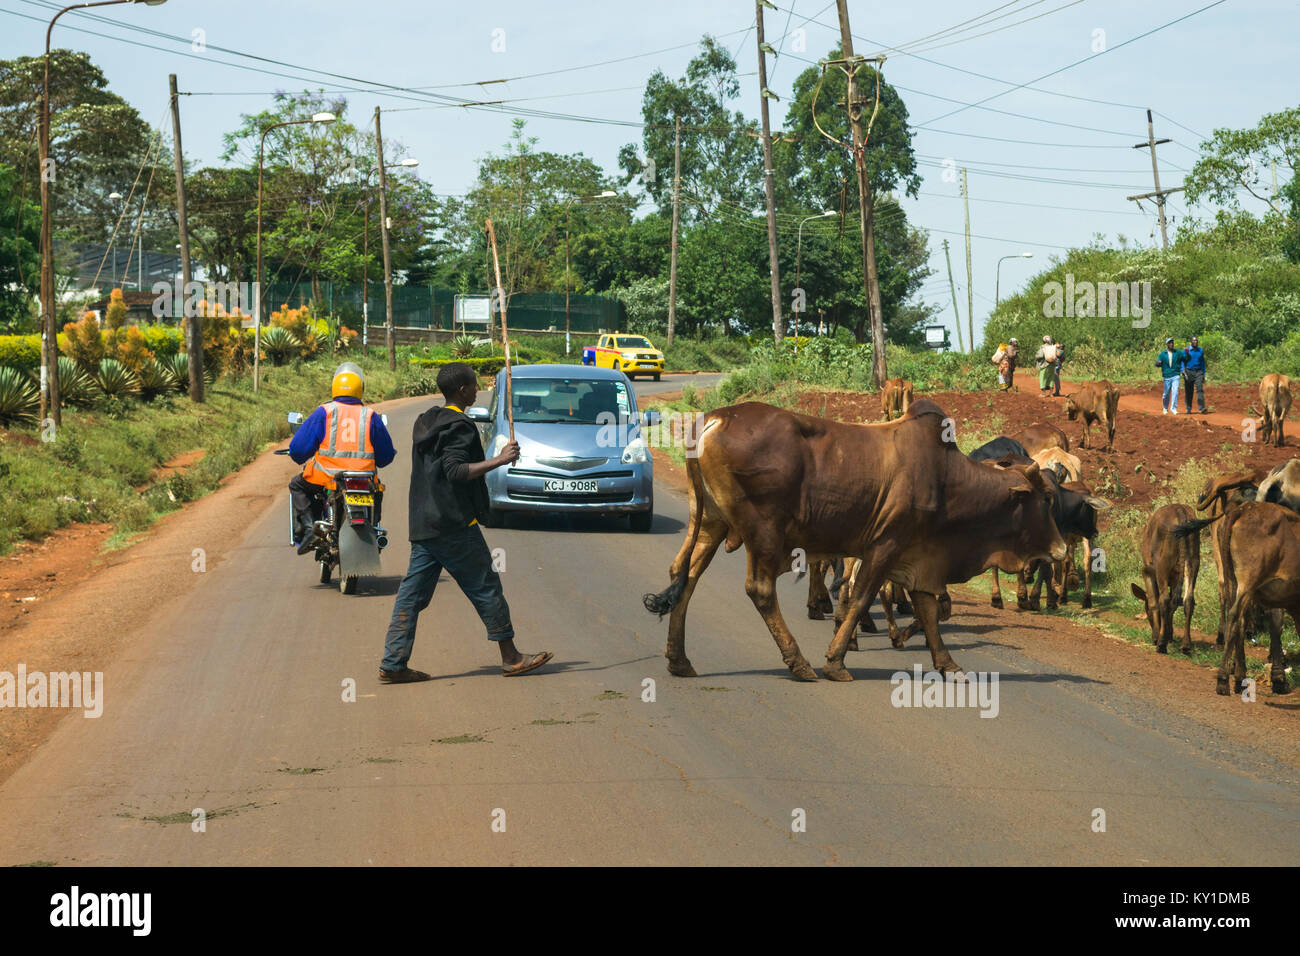 Una vaca adulta joven pastor dirige su ganado a través de una carretera un vehículo mientras esperas, Kenia, África Oriental Foto de stock